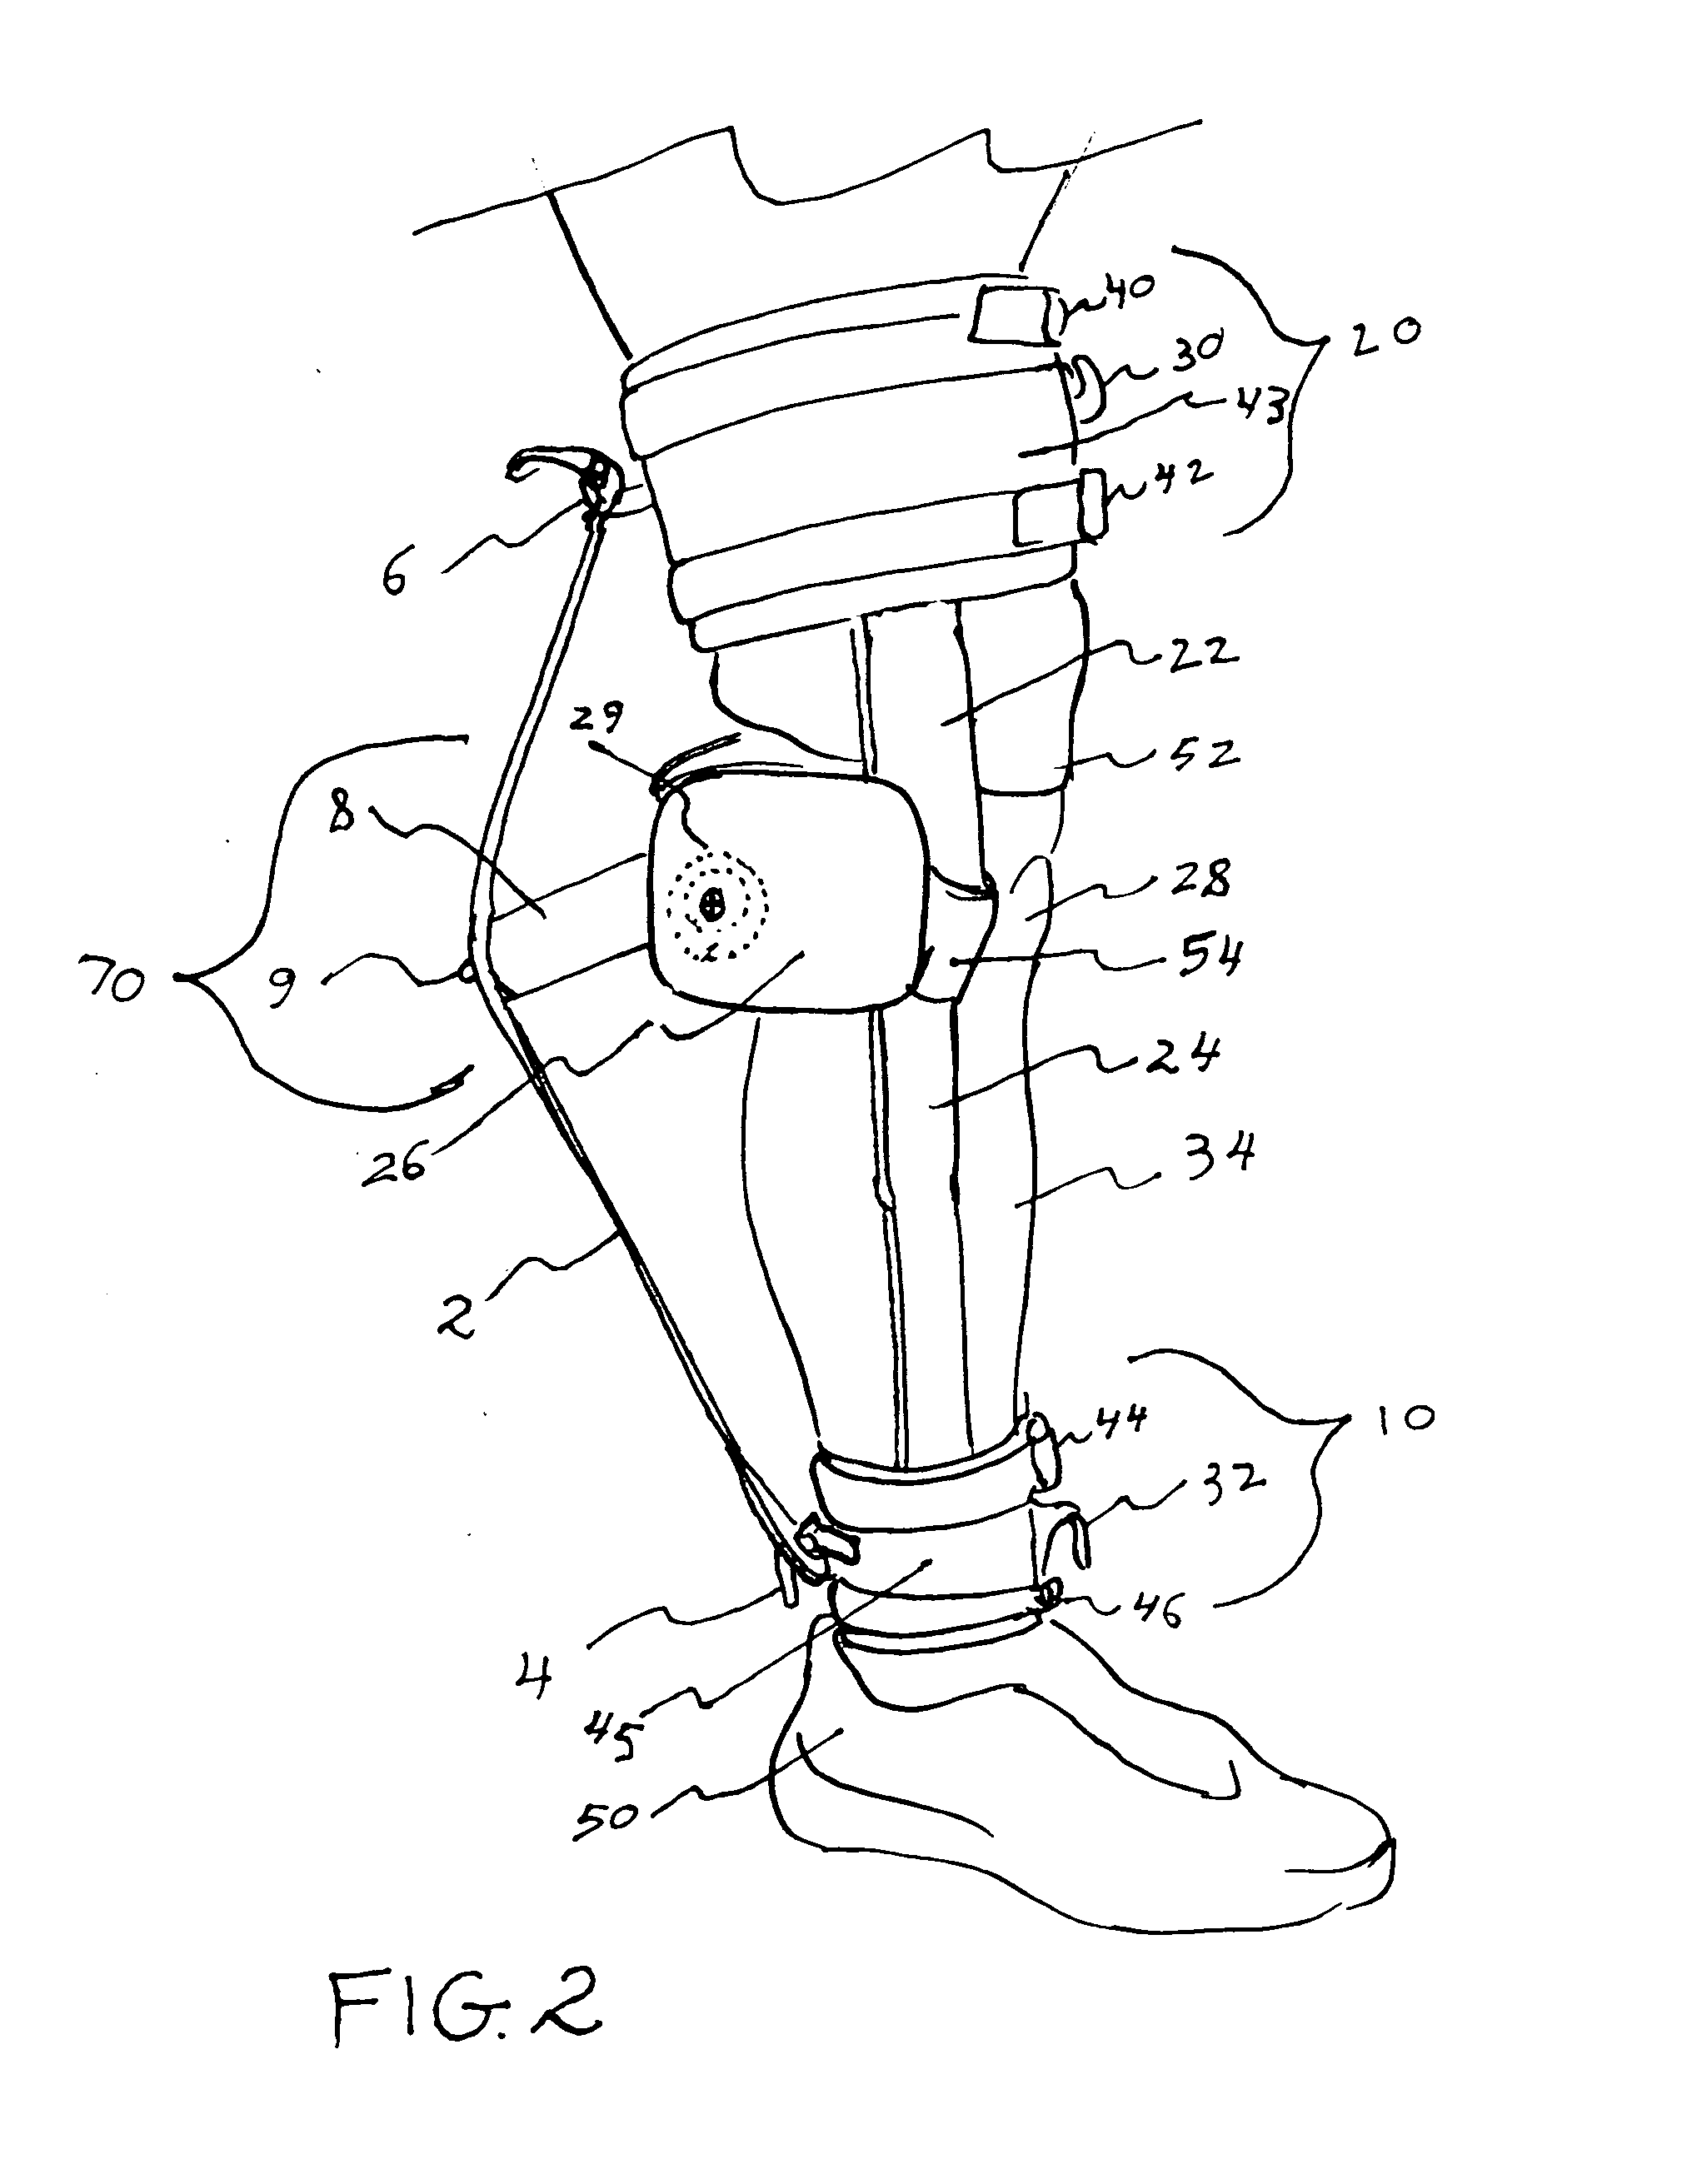 Knee rehabilitation exercise device